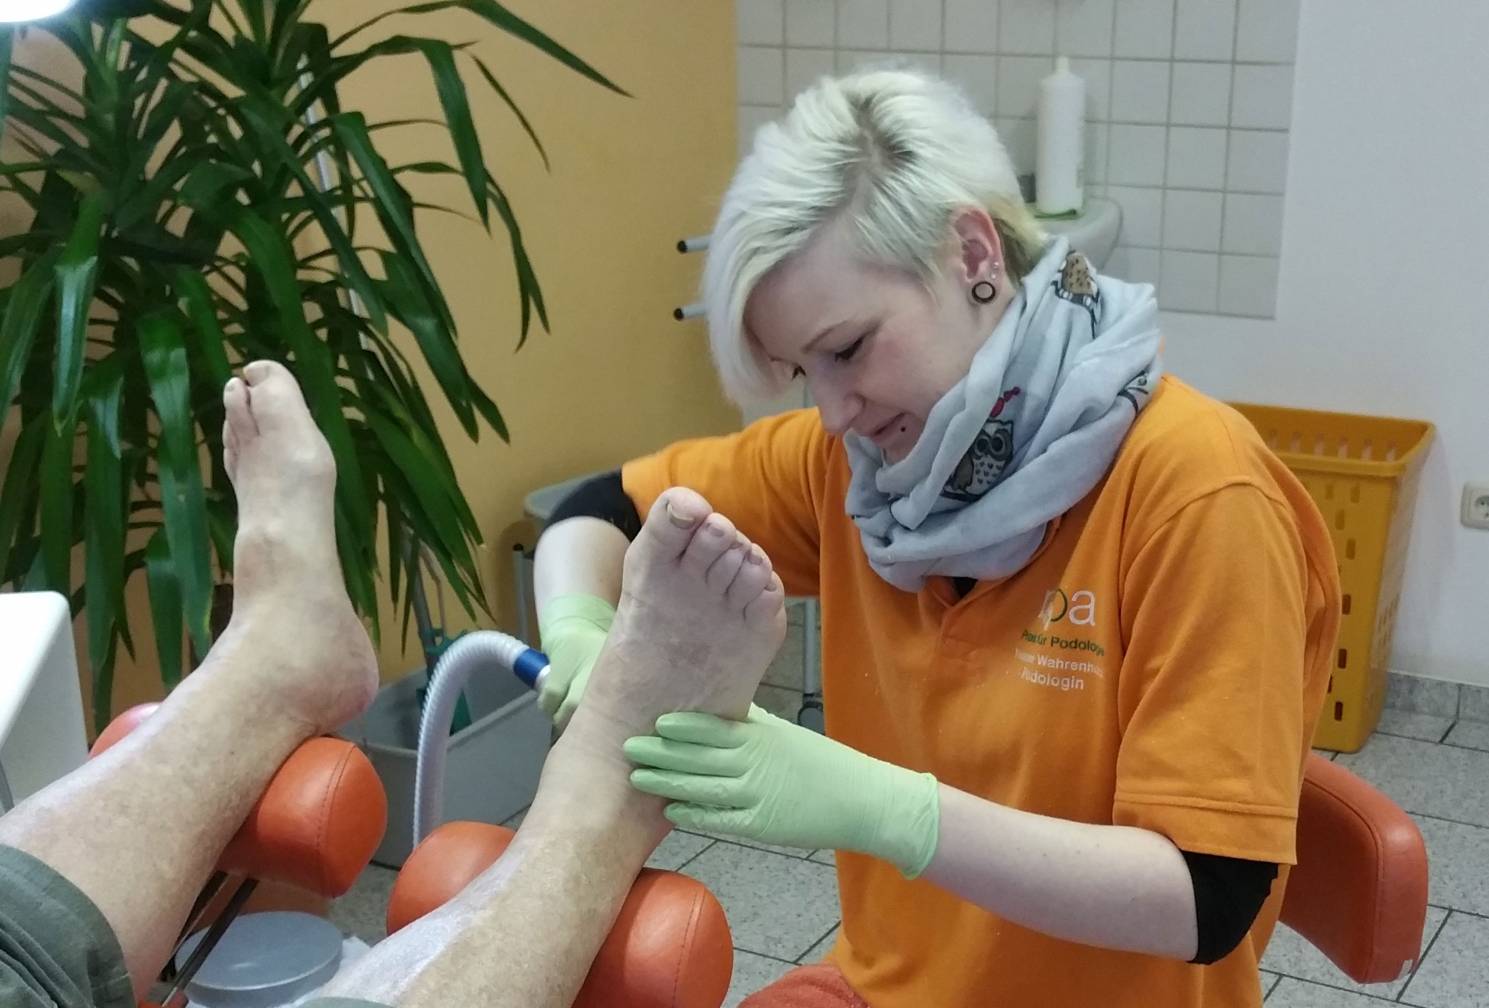 Kontaktieren Sie die Praxis für Podologie Noa in Bad Frankenhausen, wenn Sie eine podologische Behandlung oder eine medizinisch – diabetische Fußbehandlung benötigen!